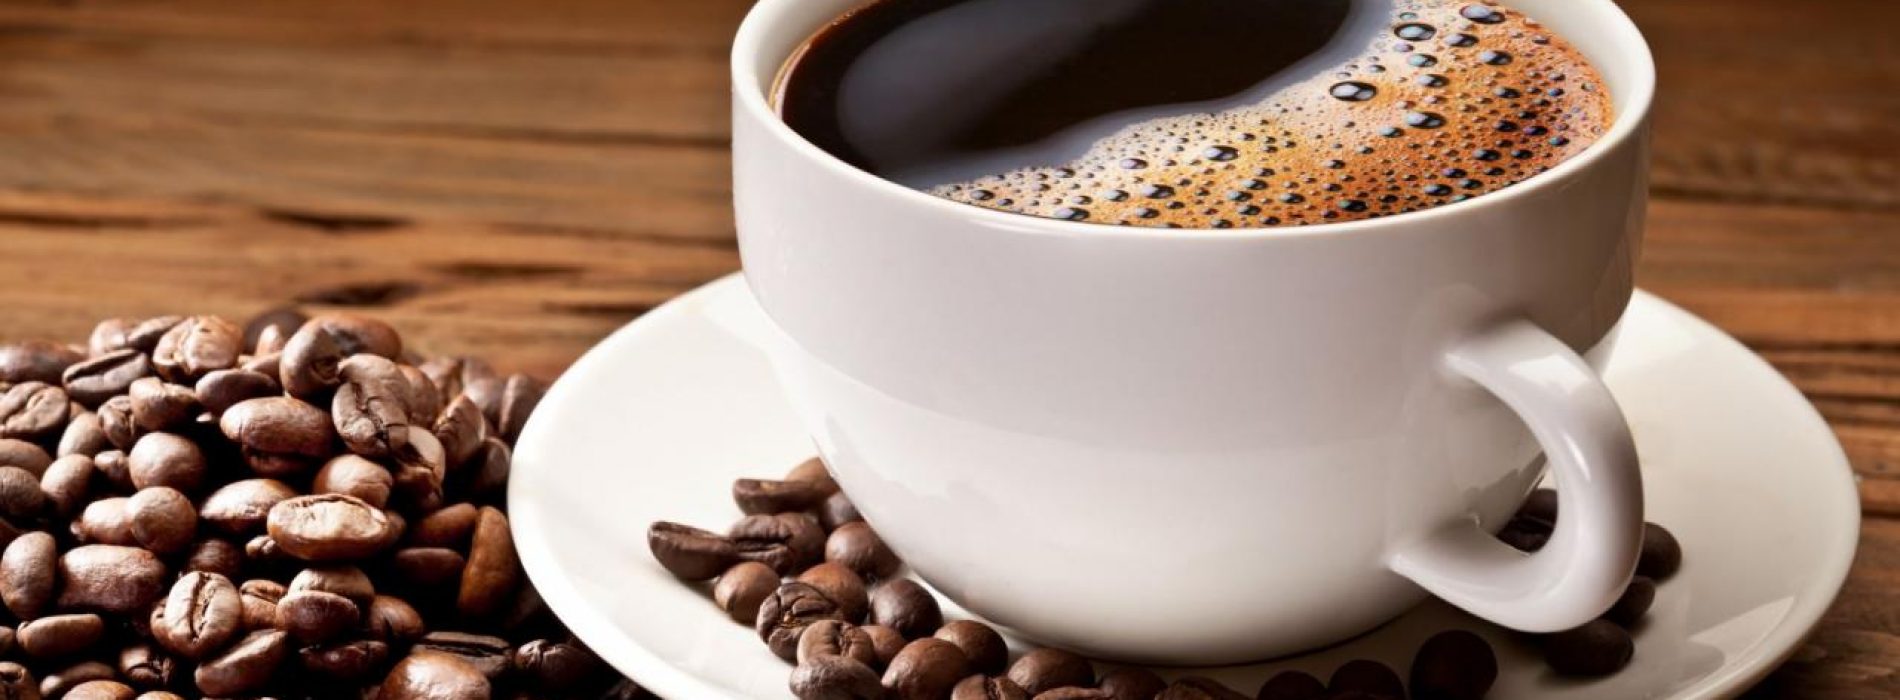 Deze 5 dingen gebeuren er als je stopt met koffie drinken!